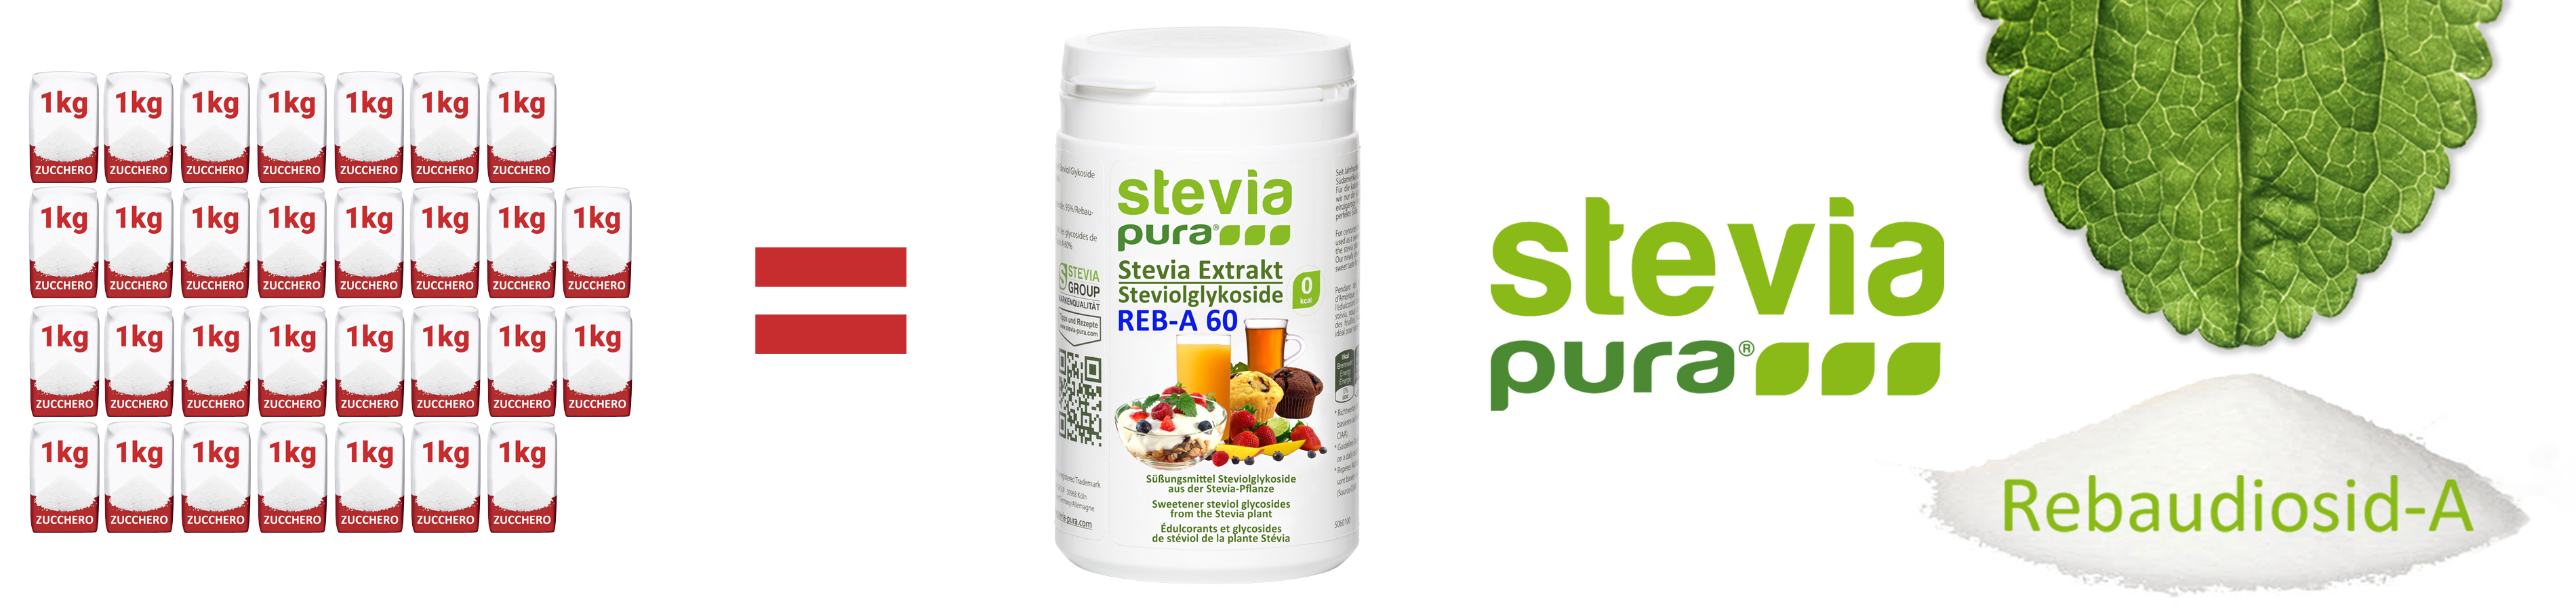 Stevia pura in polvere Rebaudioside-A 60% Estratto di...